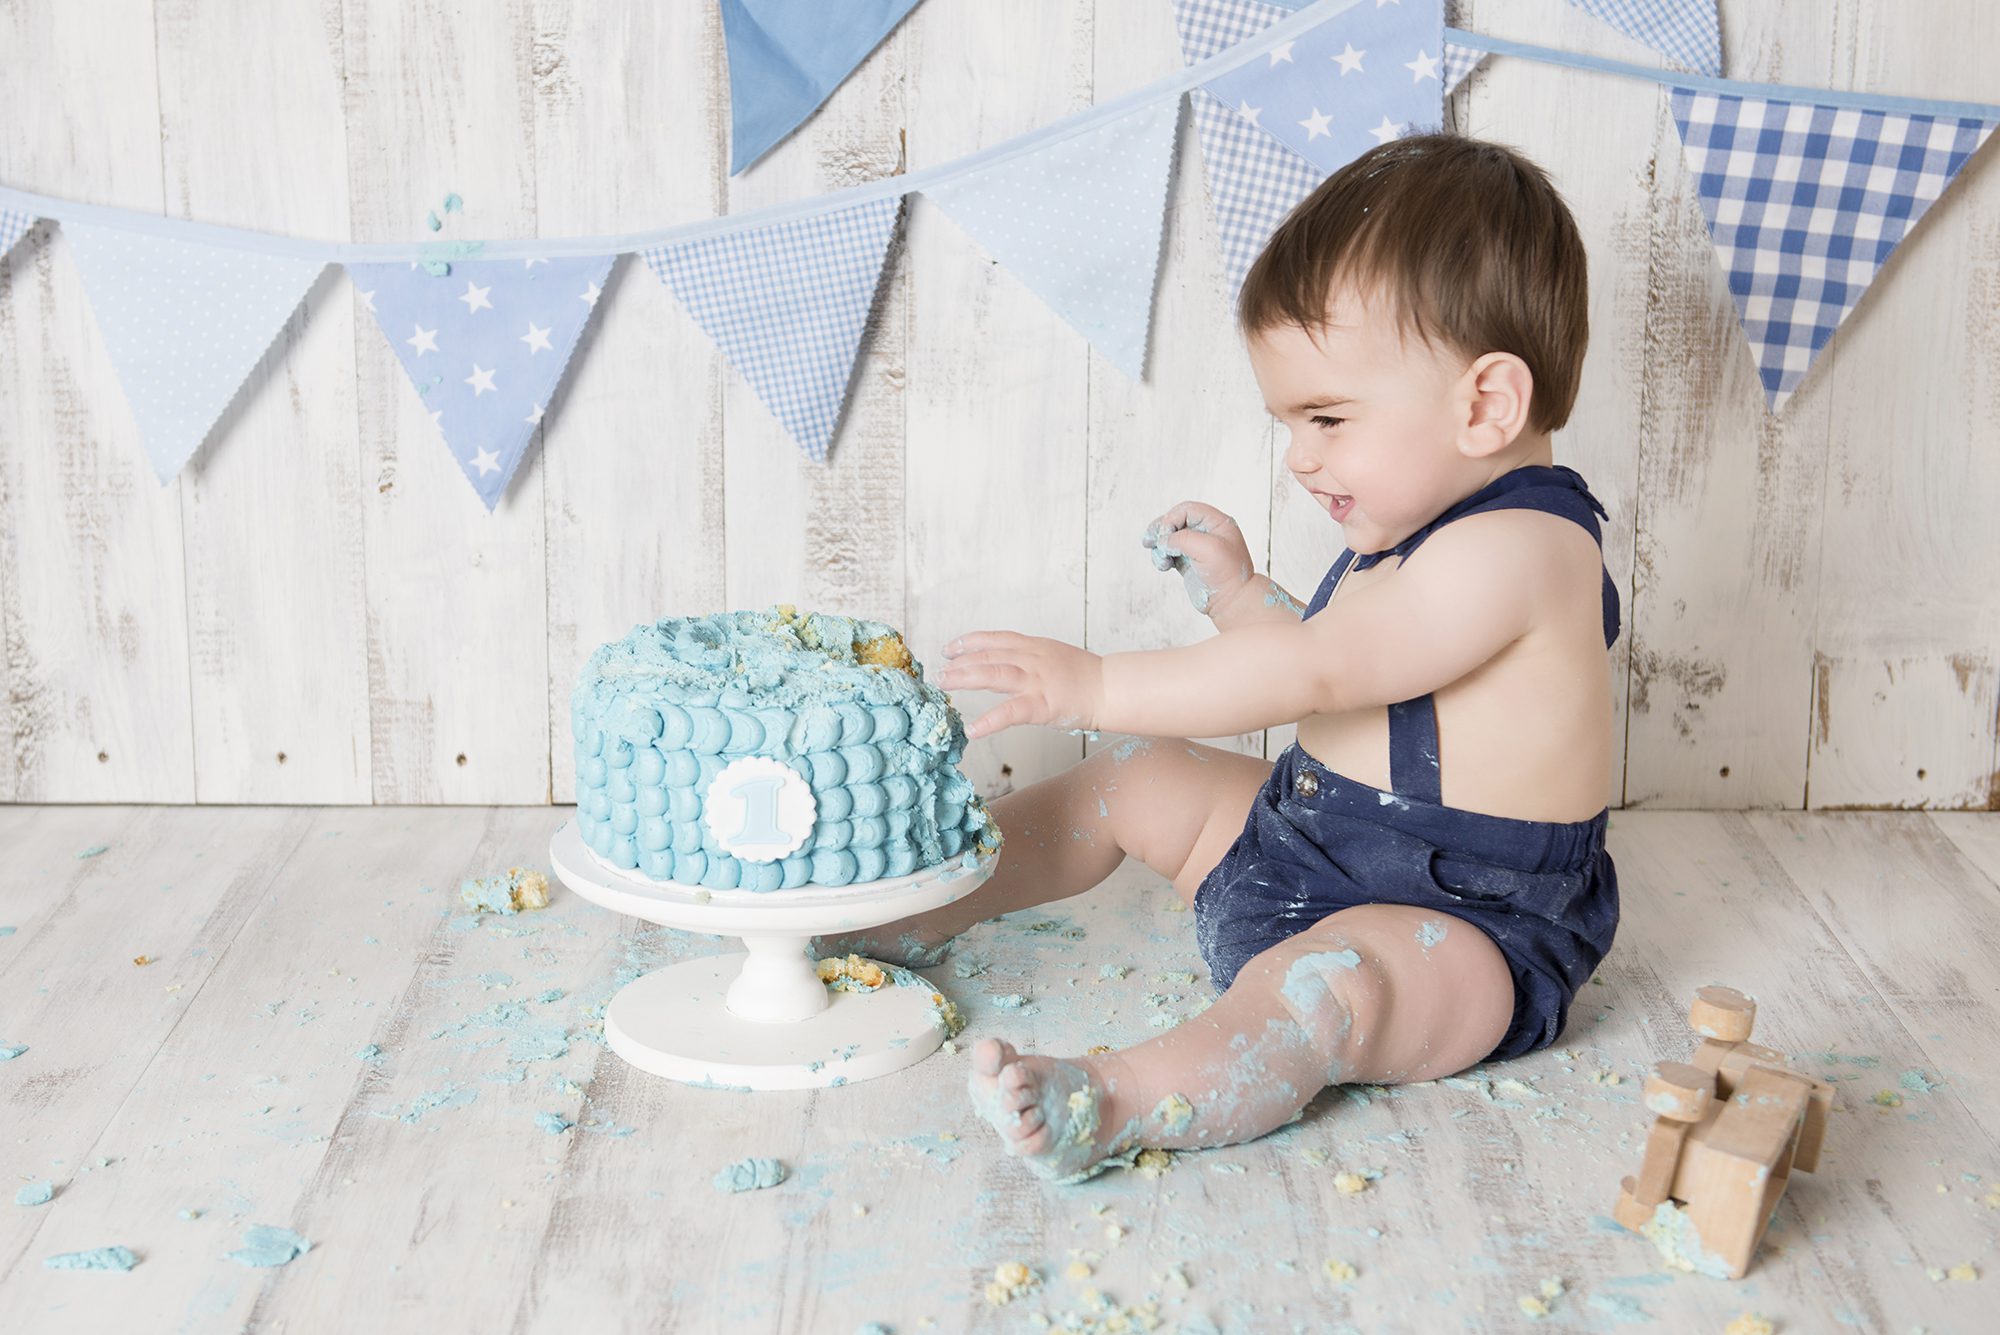 baby boy smashing blue cake for cake smash photos, reading